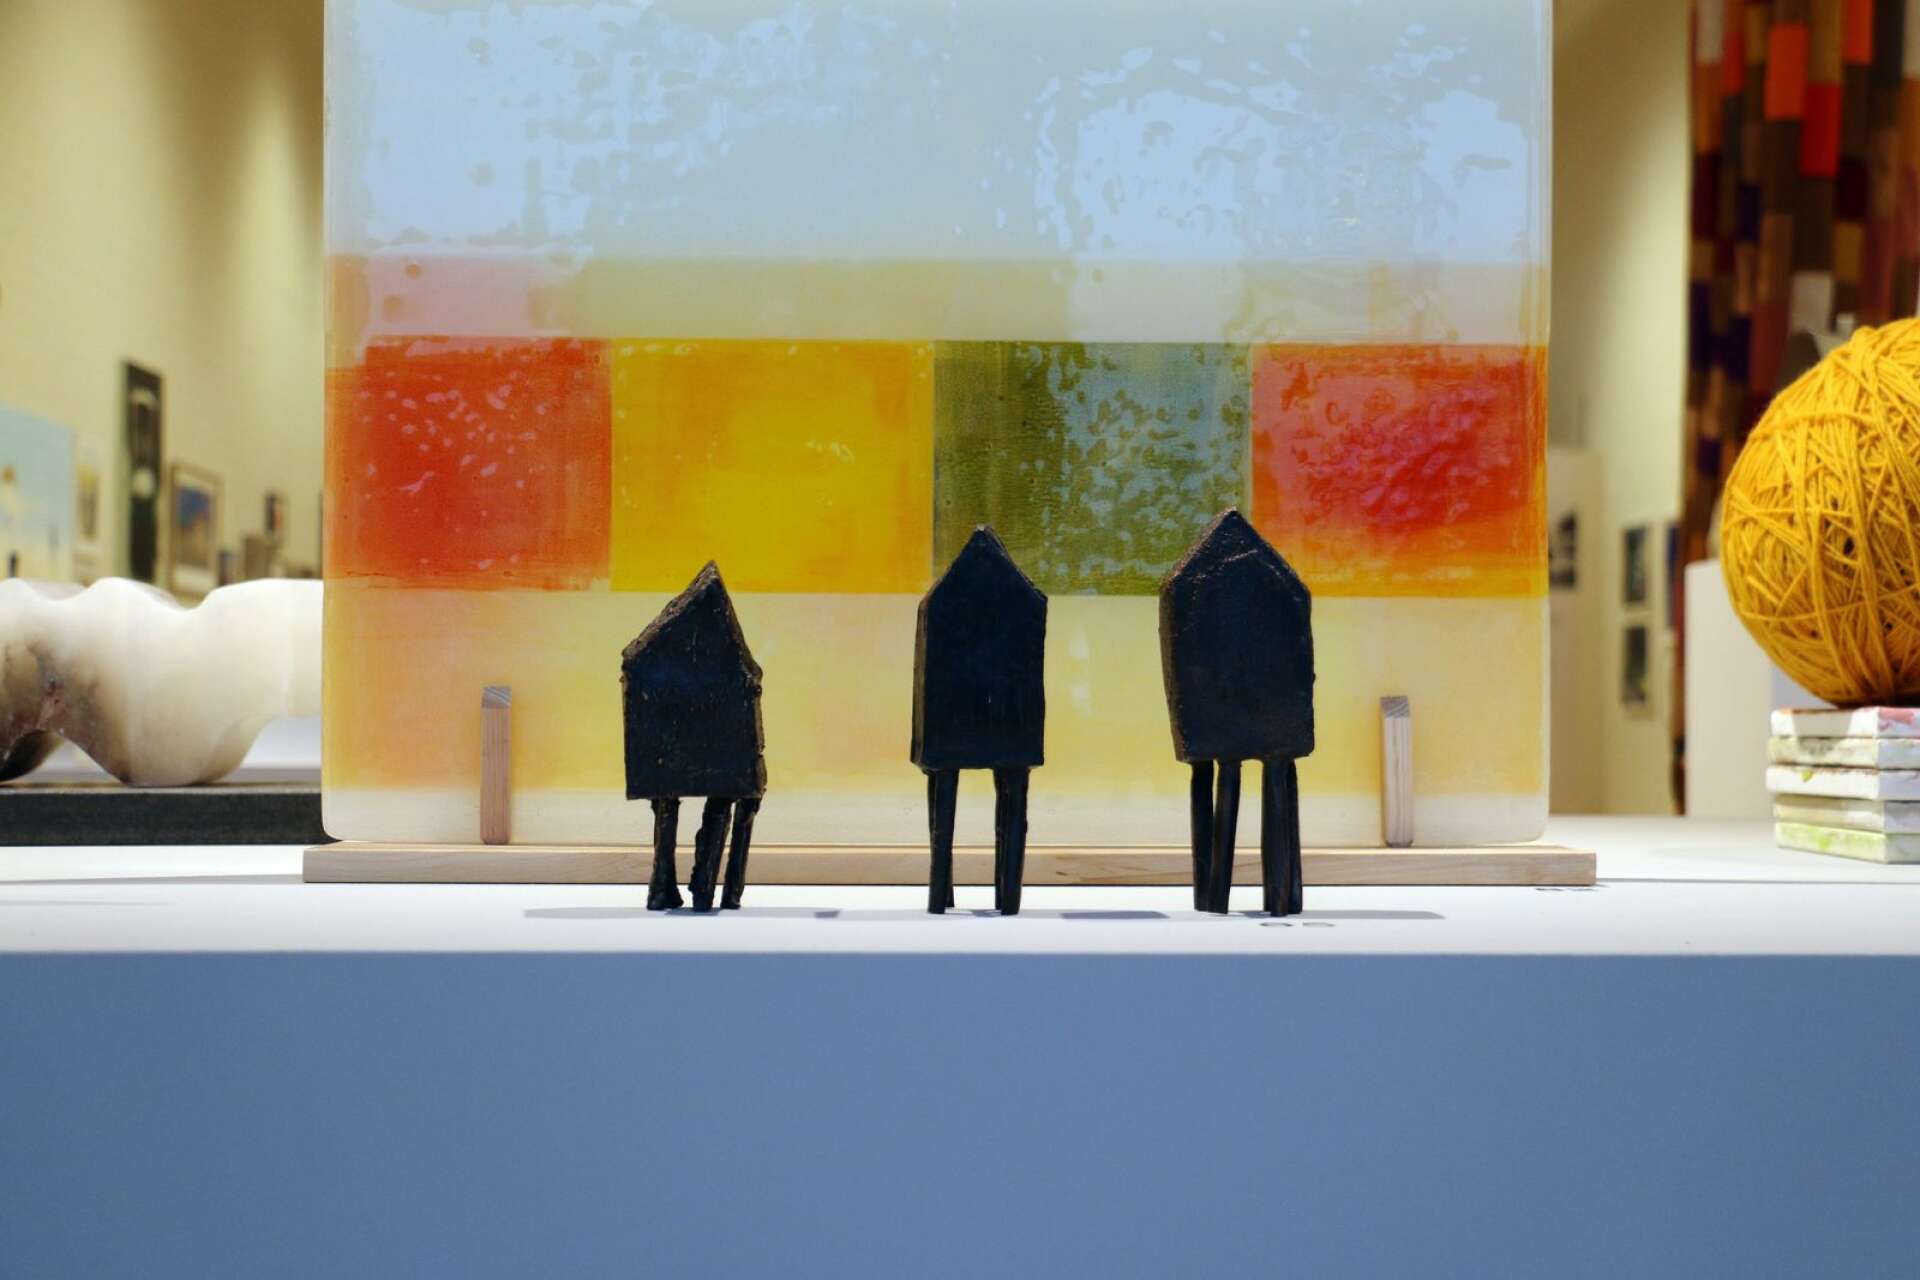 Carina Fogdes husskulpturer i järn är ett av hennes två konstverk på utställningen. Det andra är en målning.